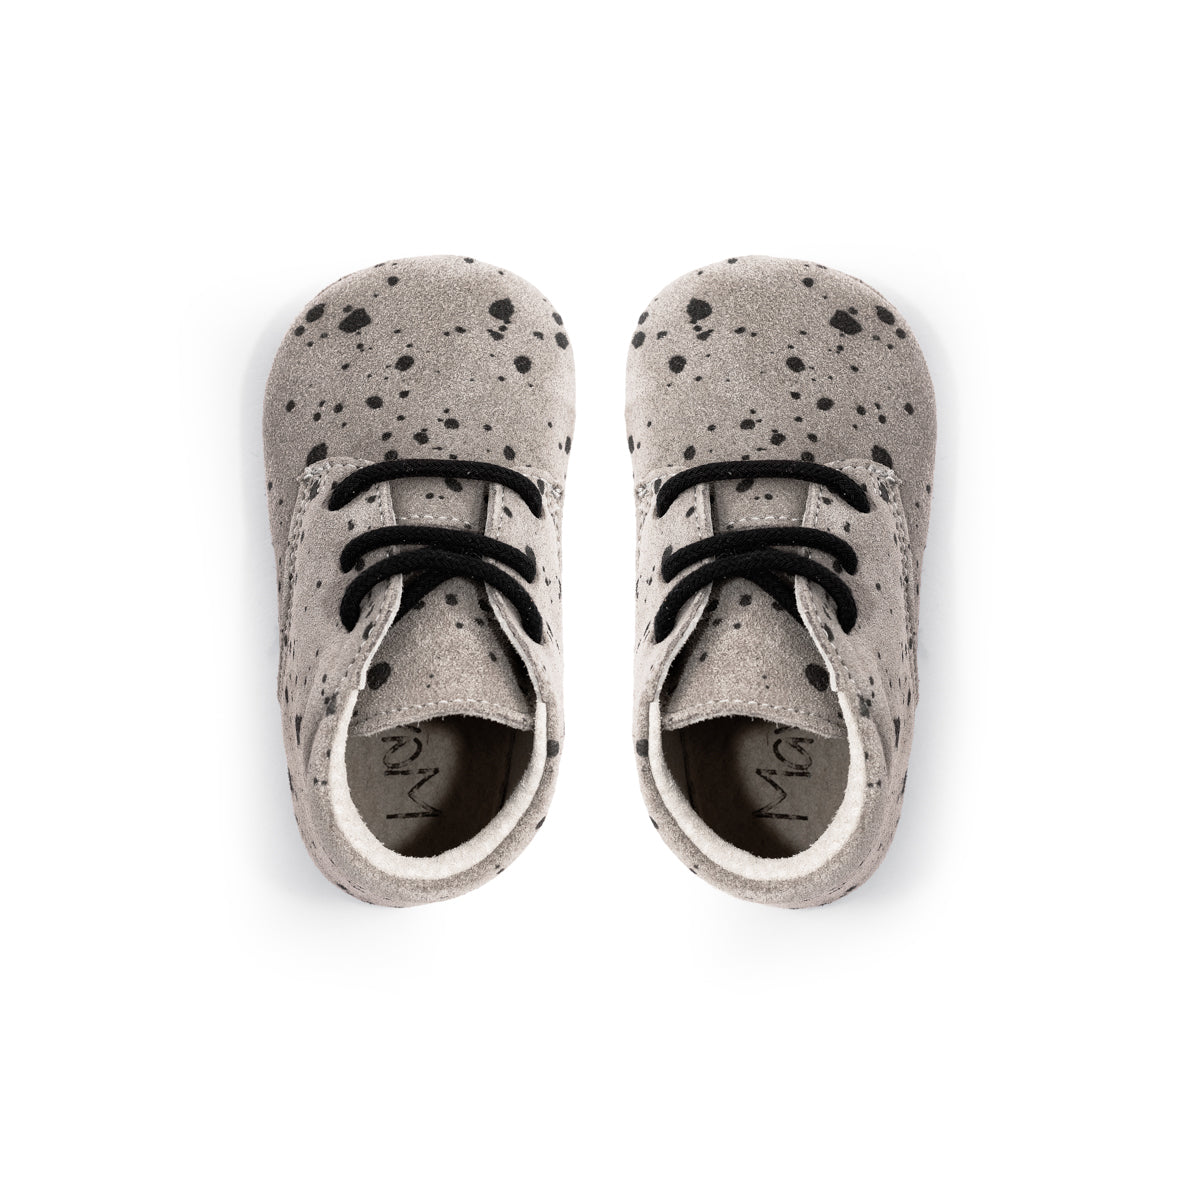 Op zoek naar stijlvolle (eerste) schoentjes van goede kwaliteit? Dat zijn de Mavies classic boots grey paint. Deze babyschoenen hebben een boots model en zijn van grijskleurig suèdeleer met verfspetters. VanZus